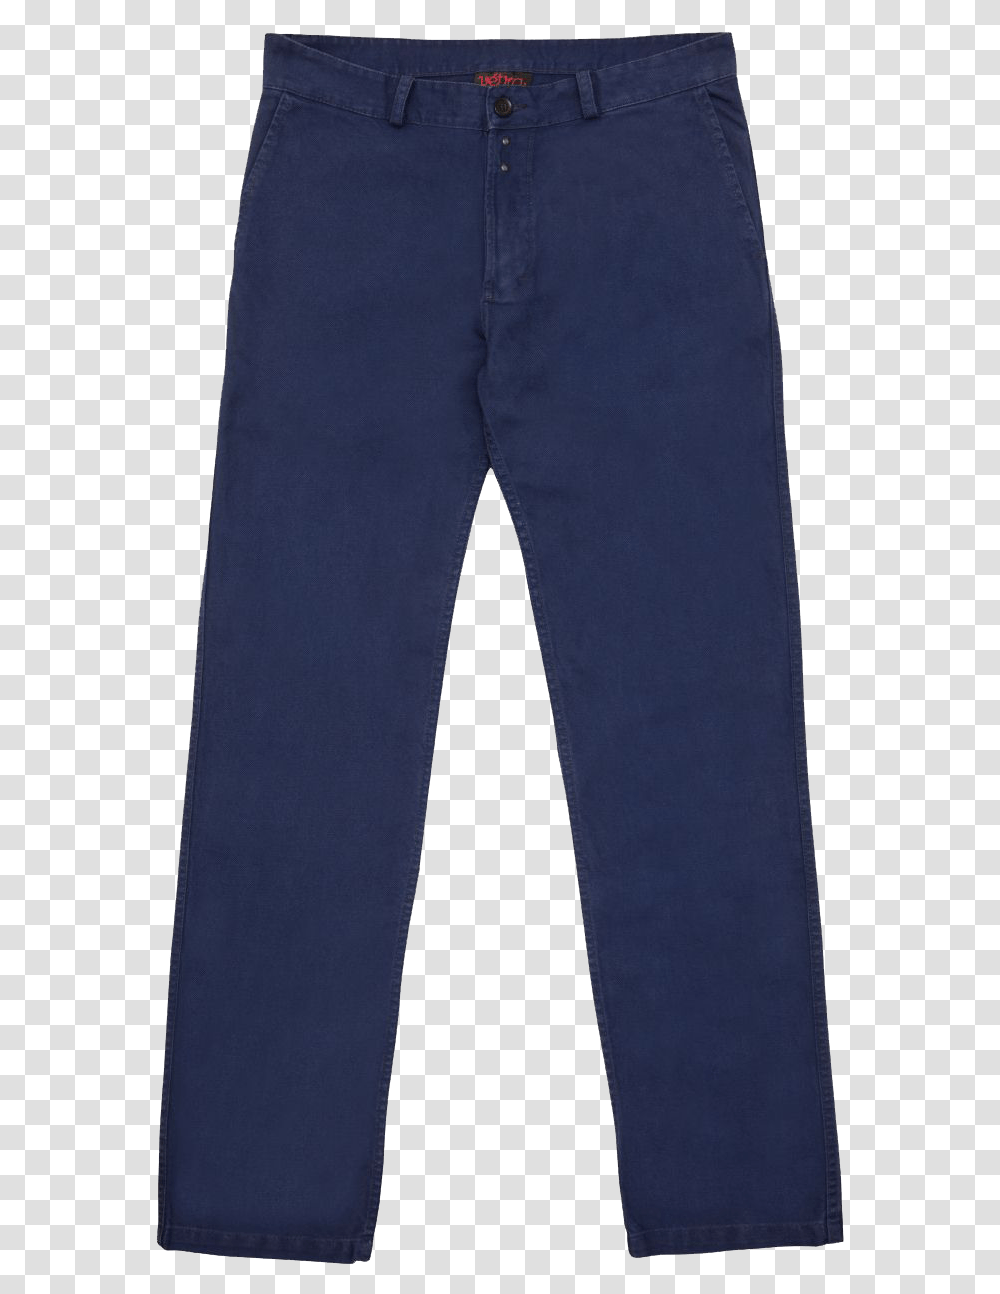 Blue Jeans Trousers, Pants, Clothing, Apparel, Denim Transparent Png